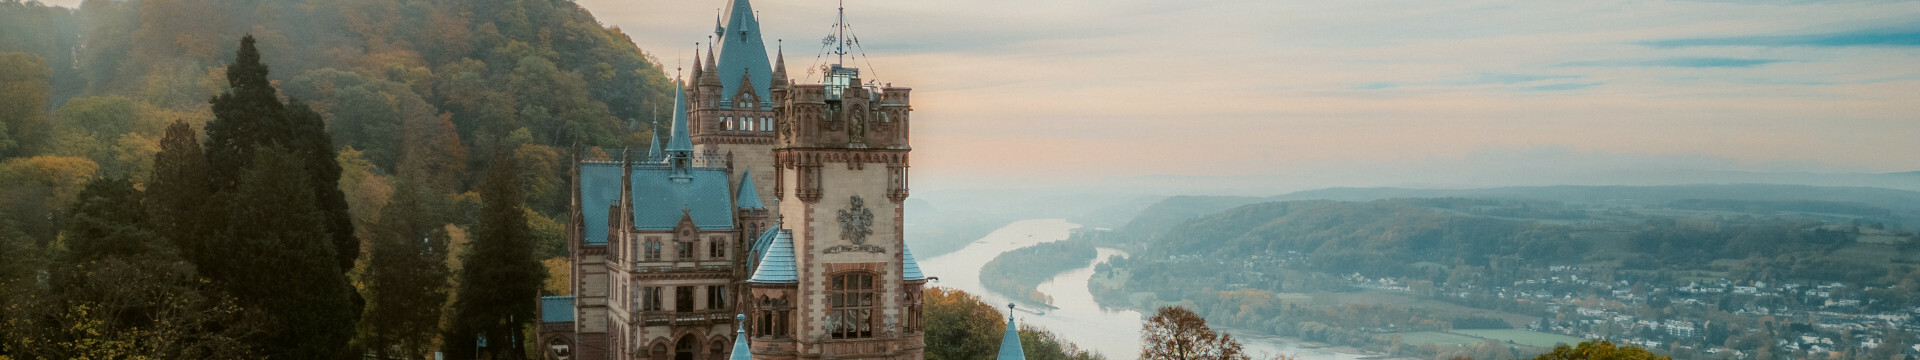 Schloss Drachenburg über dem Rhein bei Bonn mit Blick Richtung Bad Honnef 